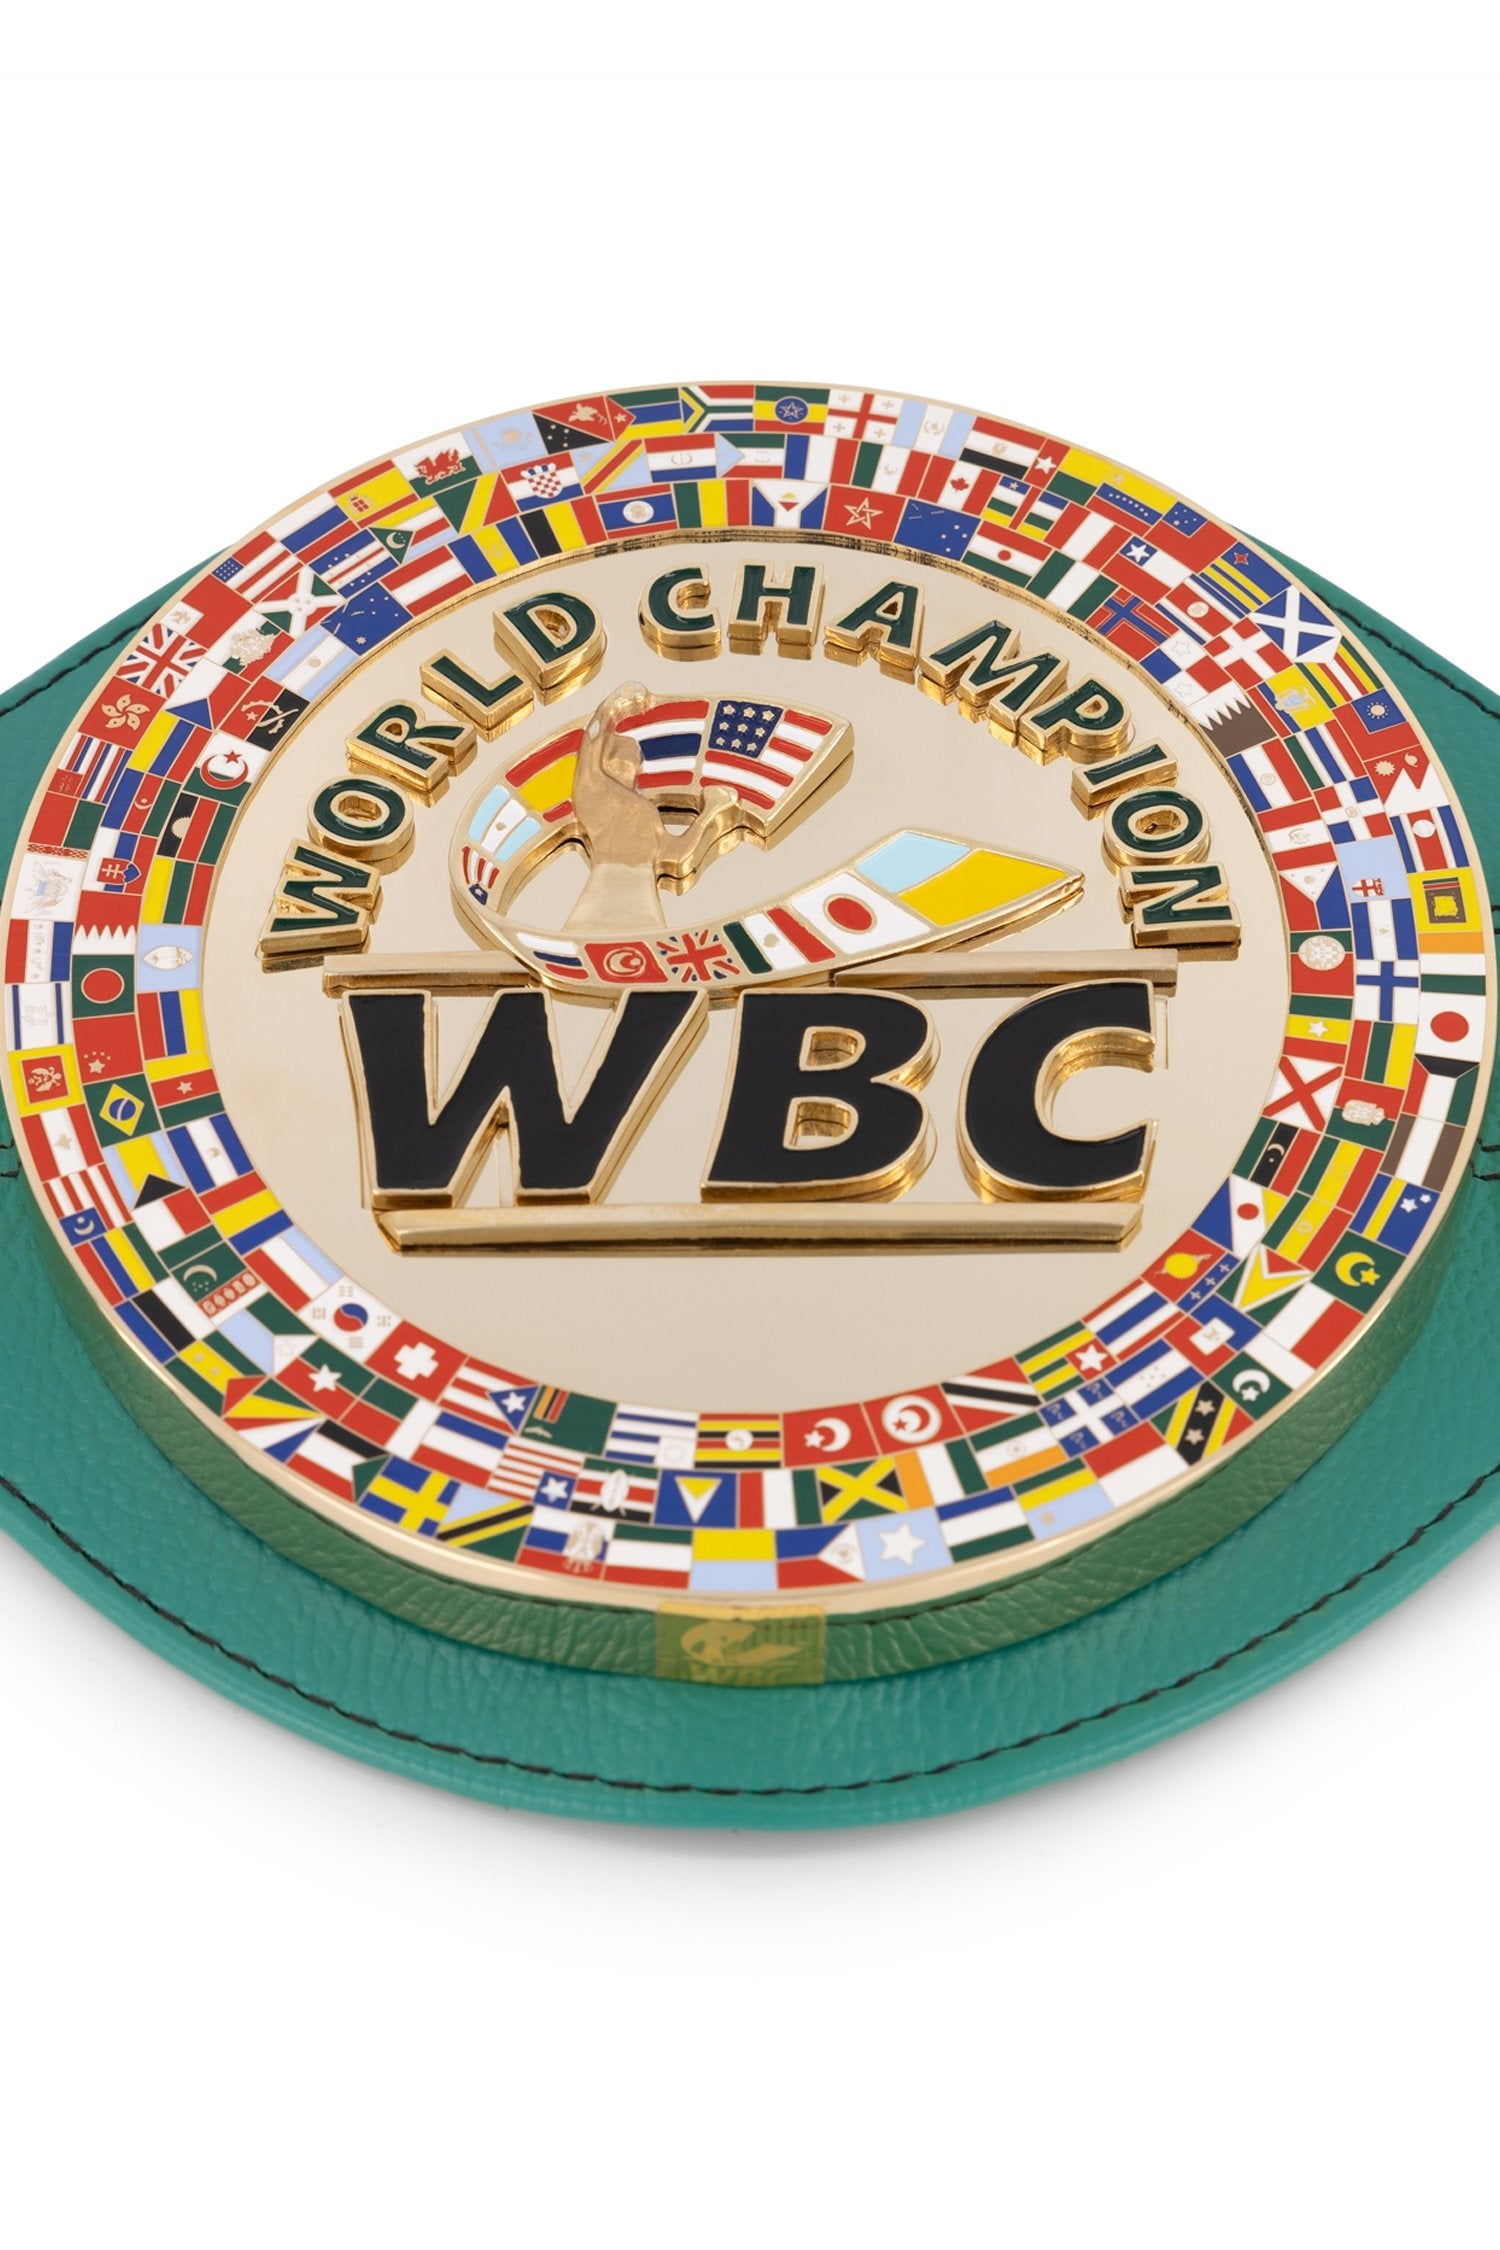 WBC - レプリカ チャンピオン ベルト 記念品 フロイド メイウェザー